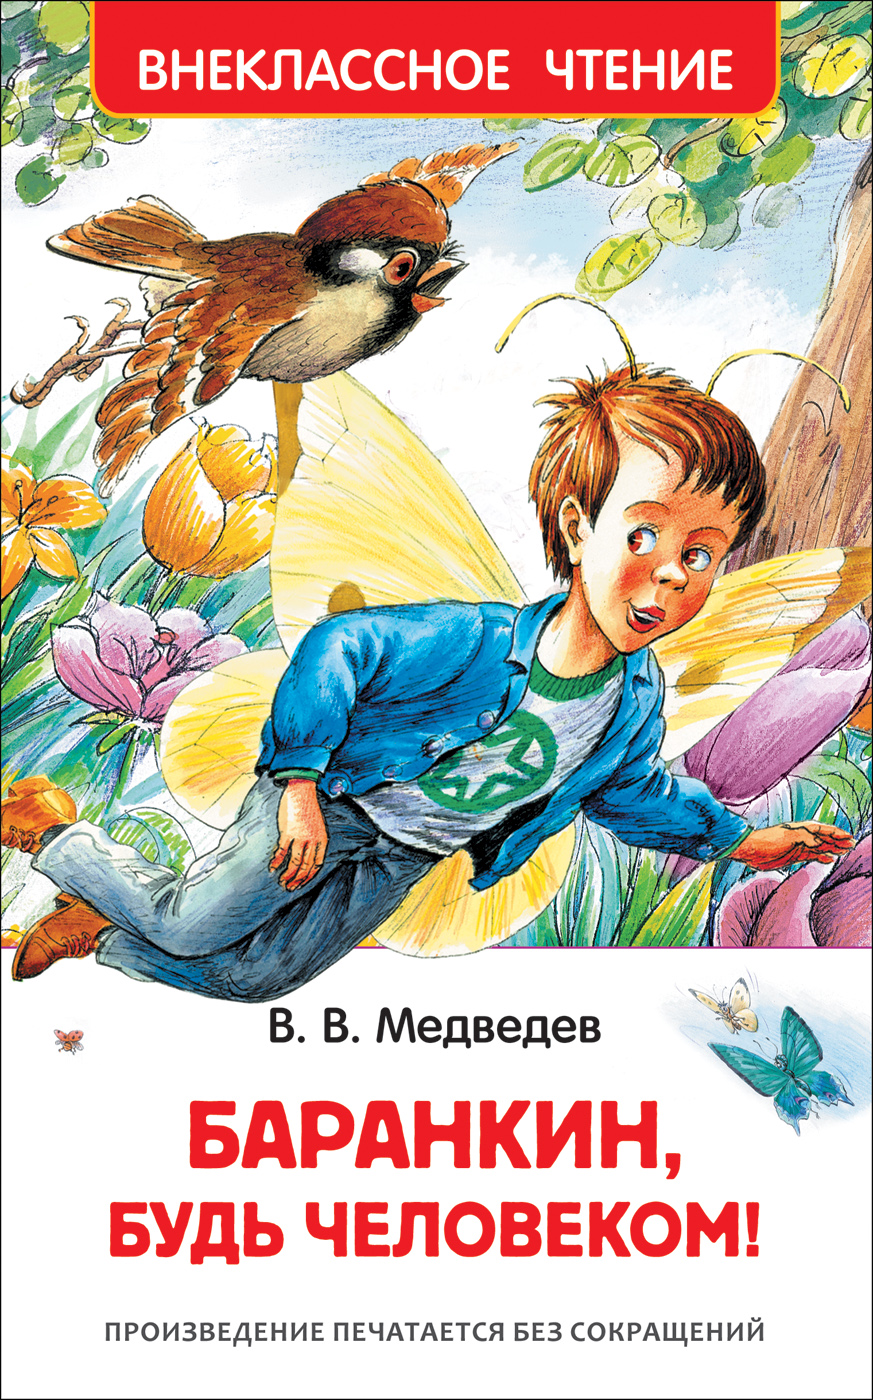 Книга 29897 "Баранкин, будь человекмо" ВЧ  Росмэн - Саранск 